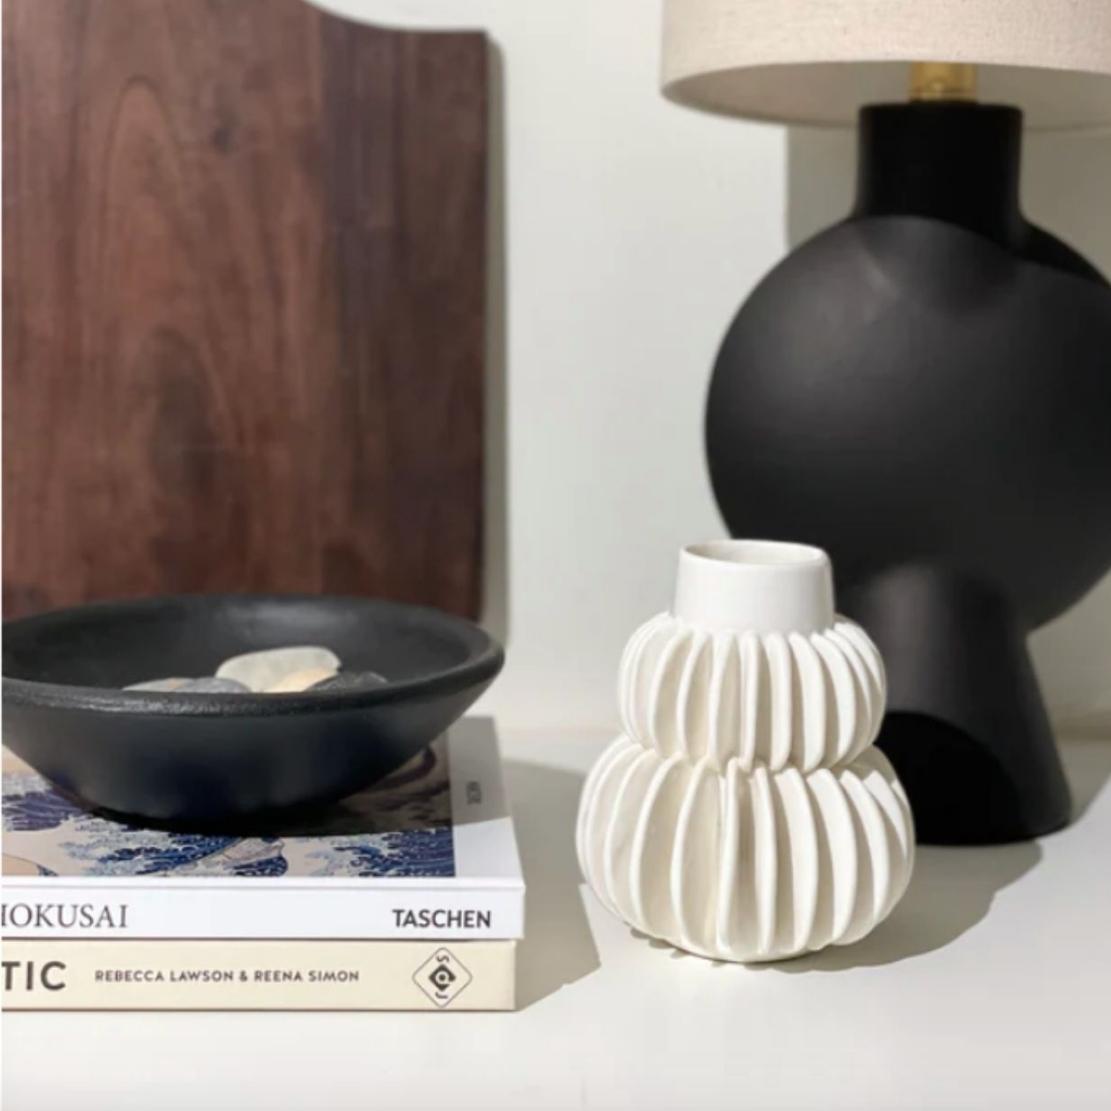 White, ceramic line ball vase